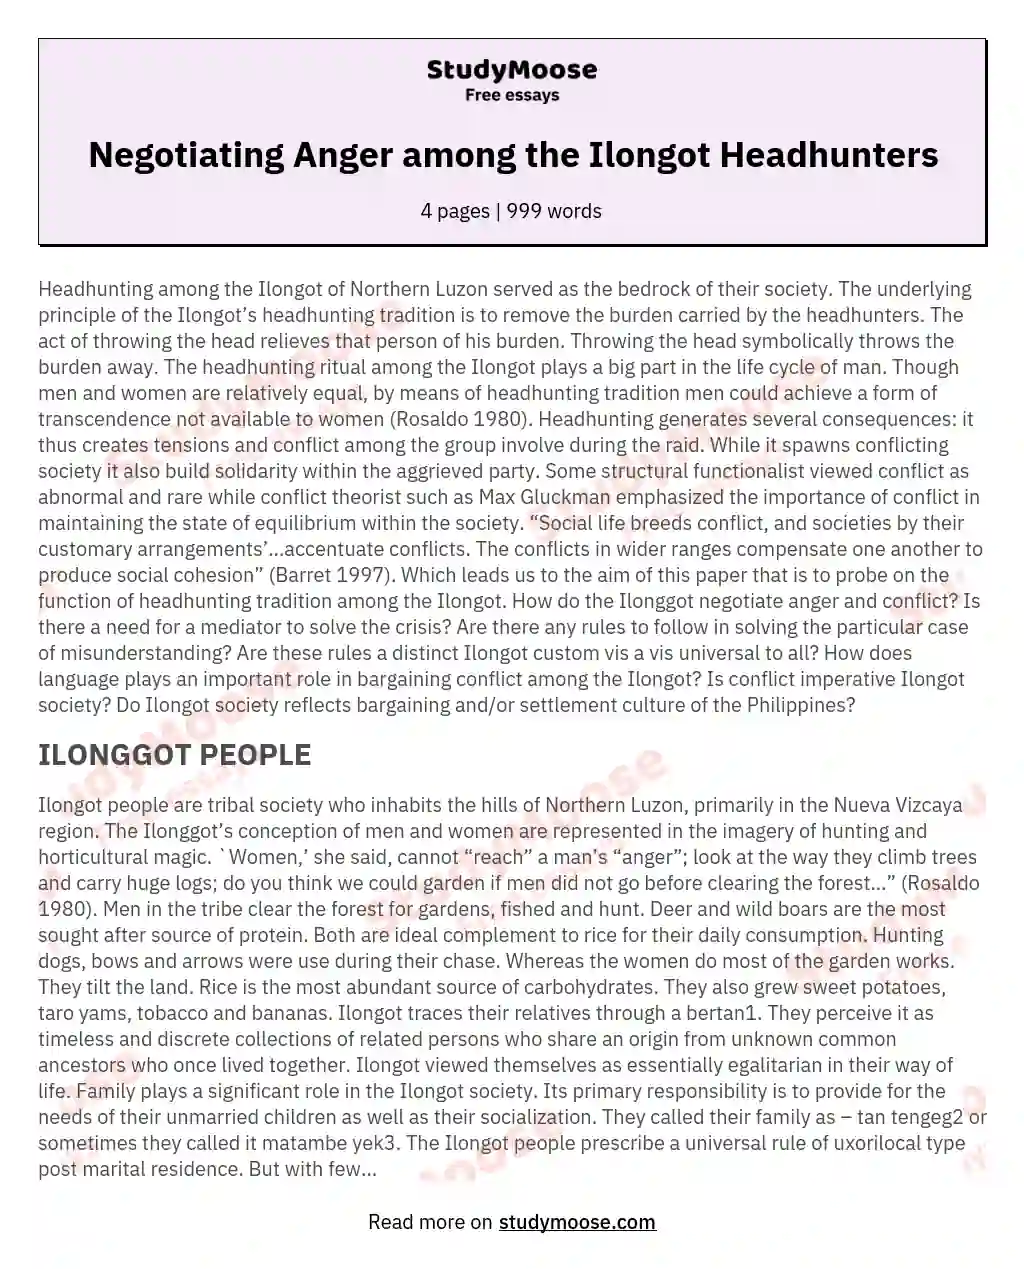 Negotiating Anger among the Ilongot Headhunters essay